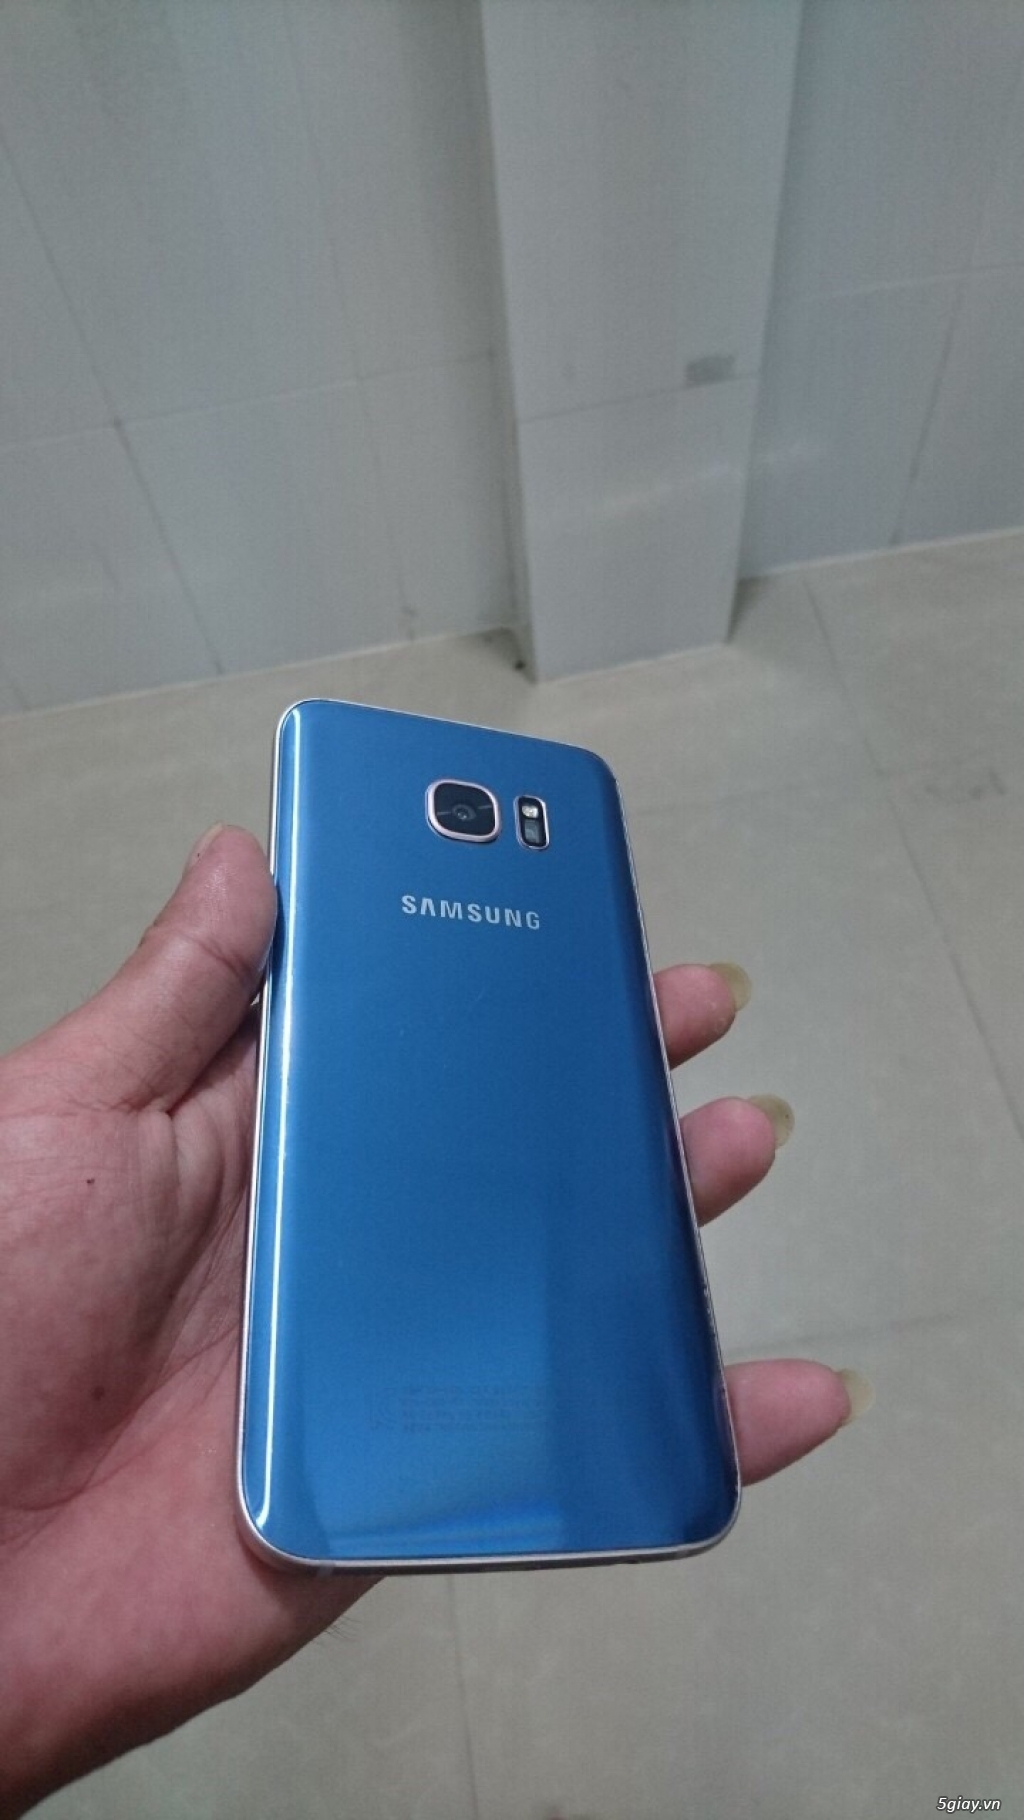 Samsung Galaxy S7 Edge Hàn quốc xách tay 99% nguyên zin